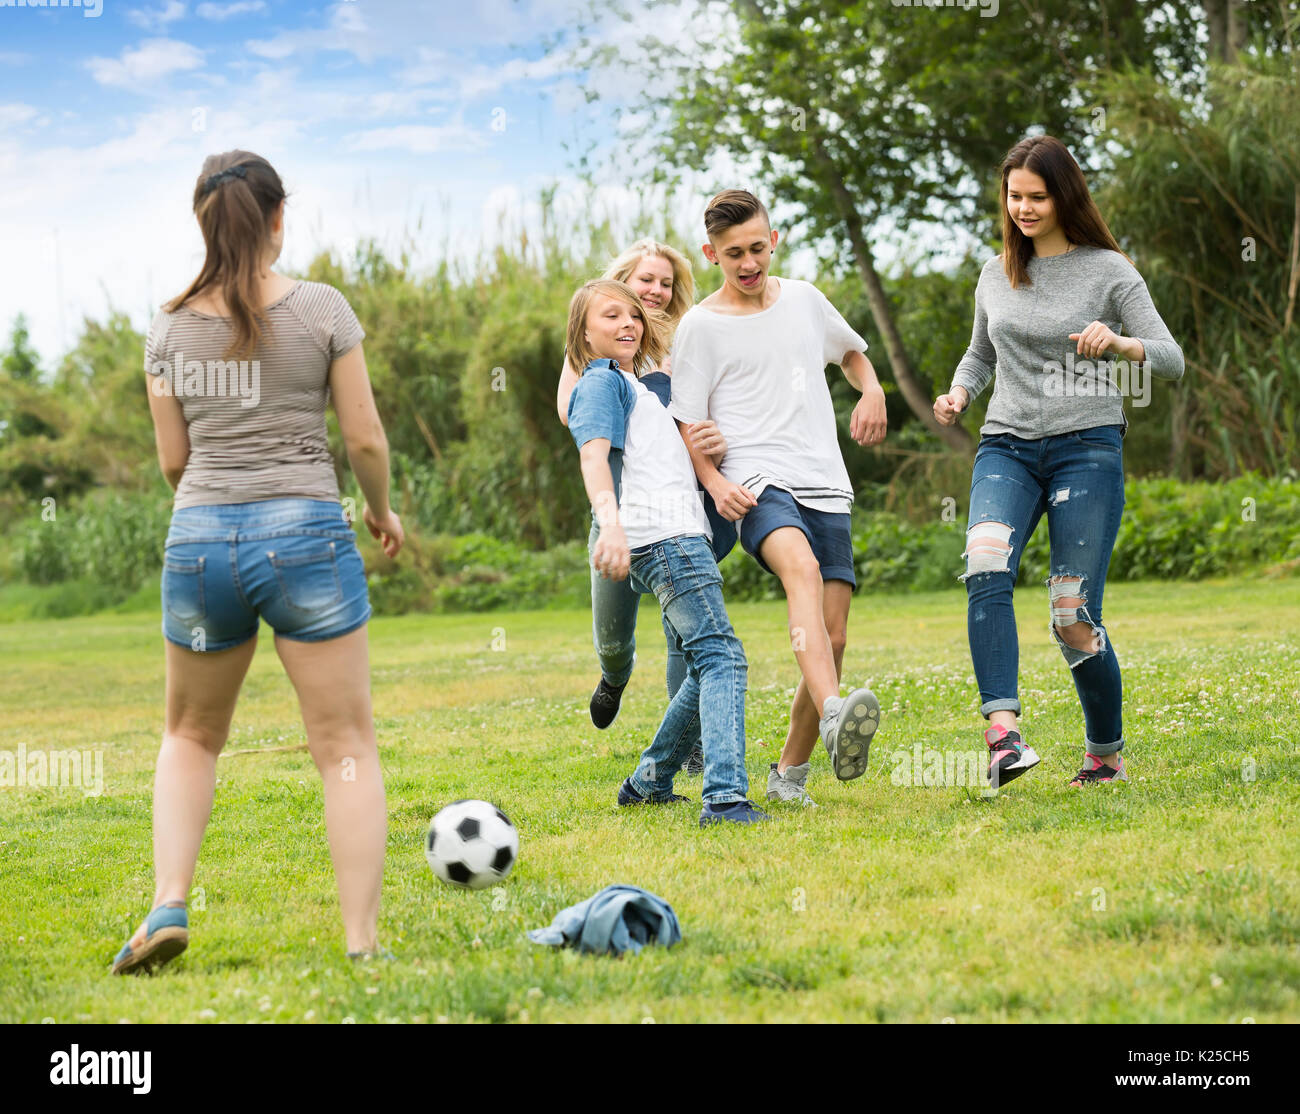 Играют в футбол в парке. Дети играют в футбол в парке. Подростки играют в мяч. Фотографии для описания. Люди играют на улице.